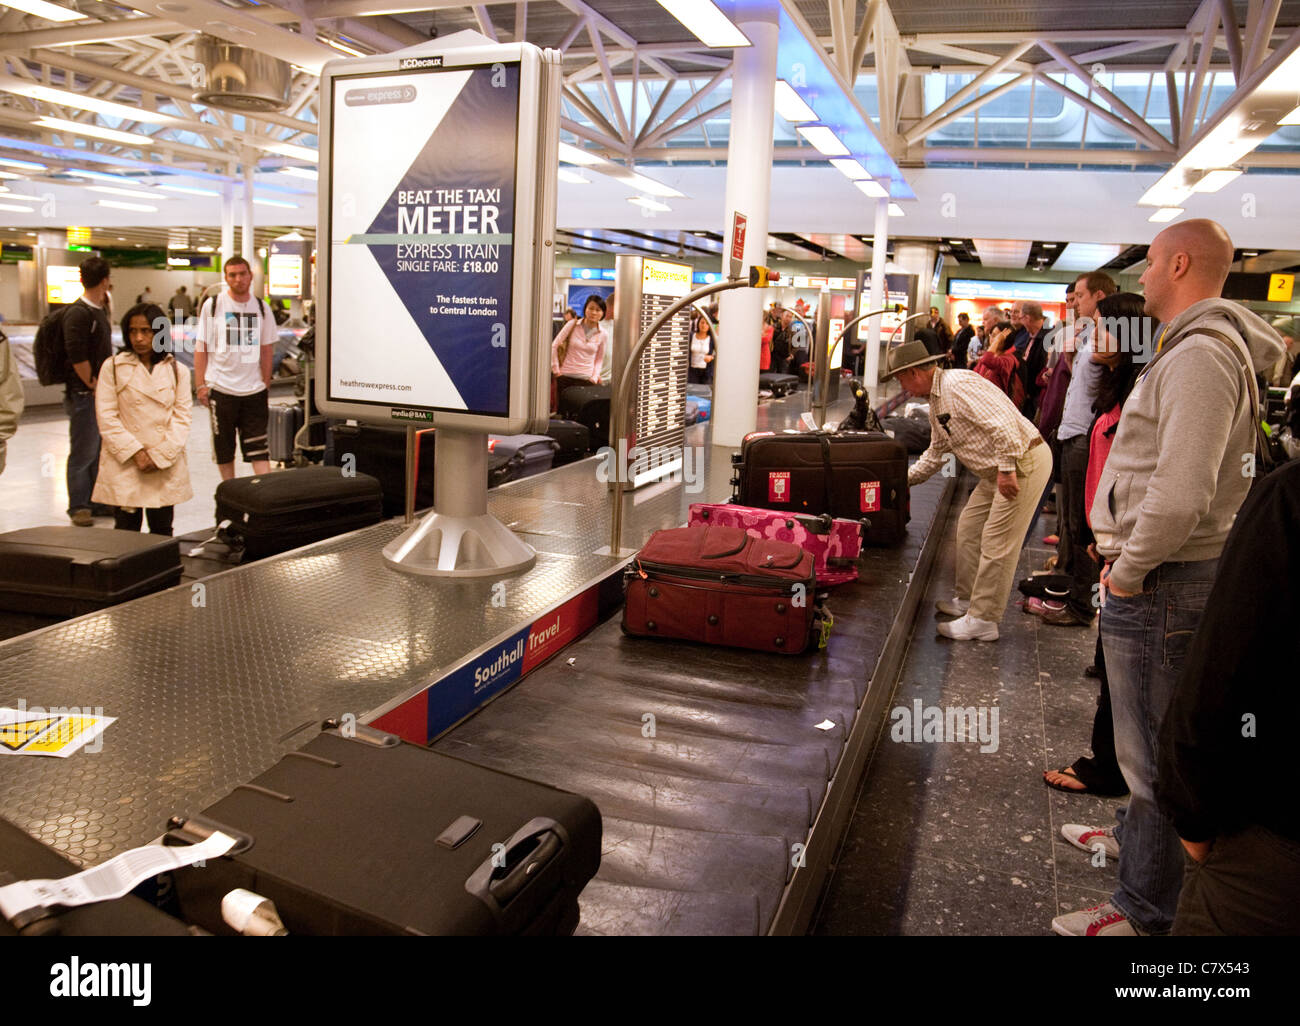 Les passagers de l'air la collecte de vos bagages dans la salle des bagages, terminal 3 de l'aéroport Heathrow de Londres, UK Banque D'Images